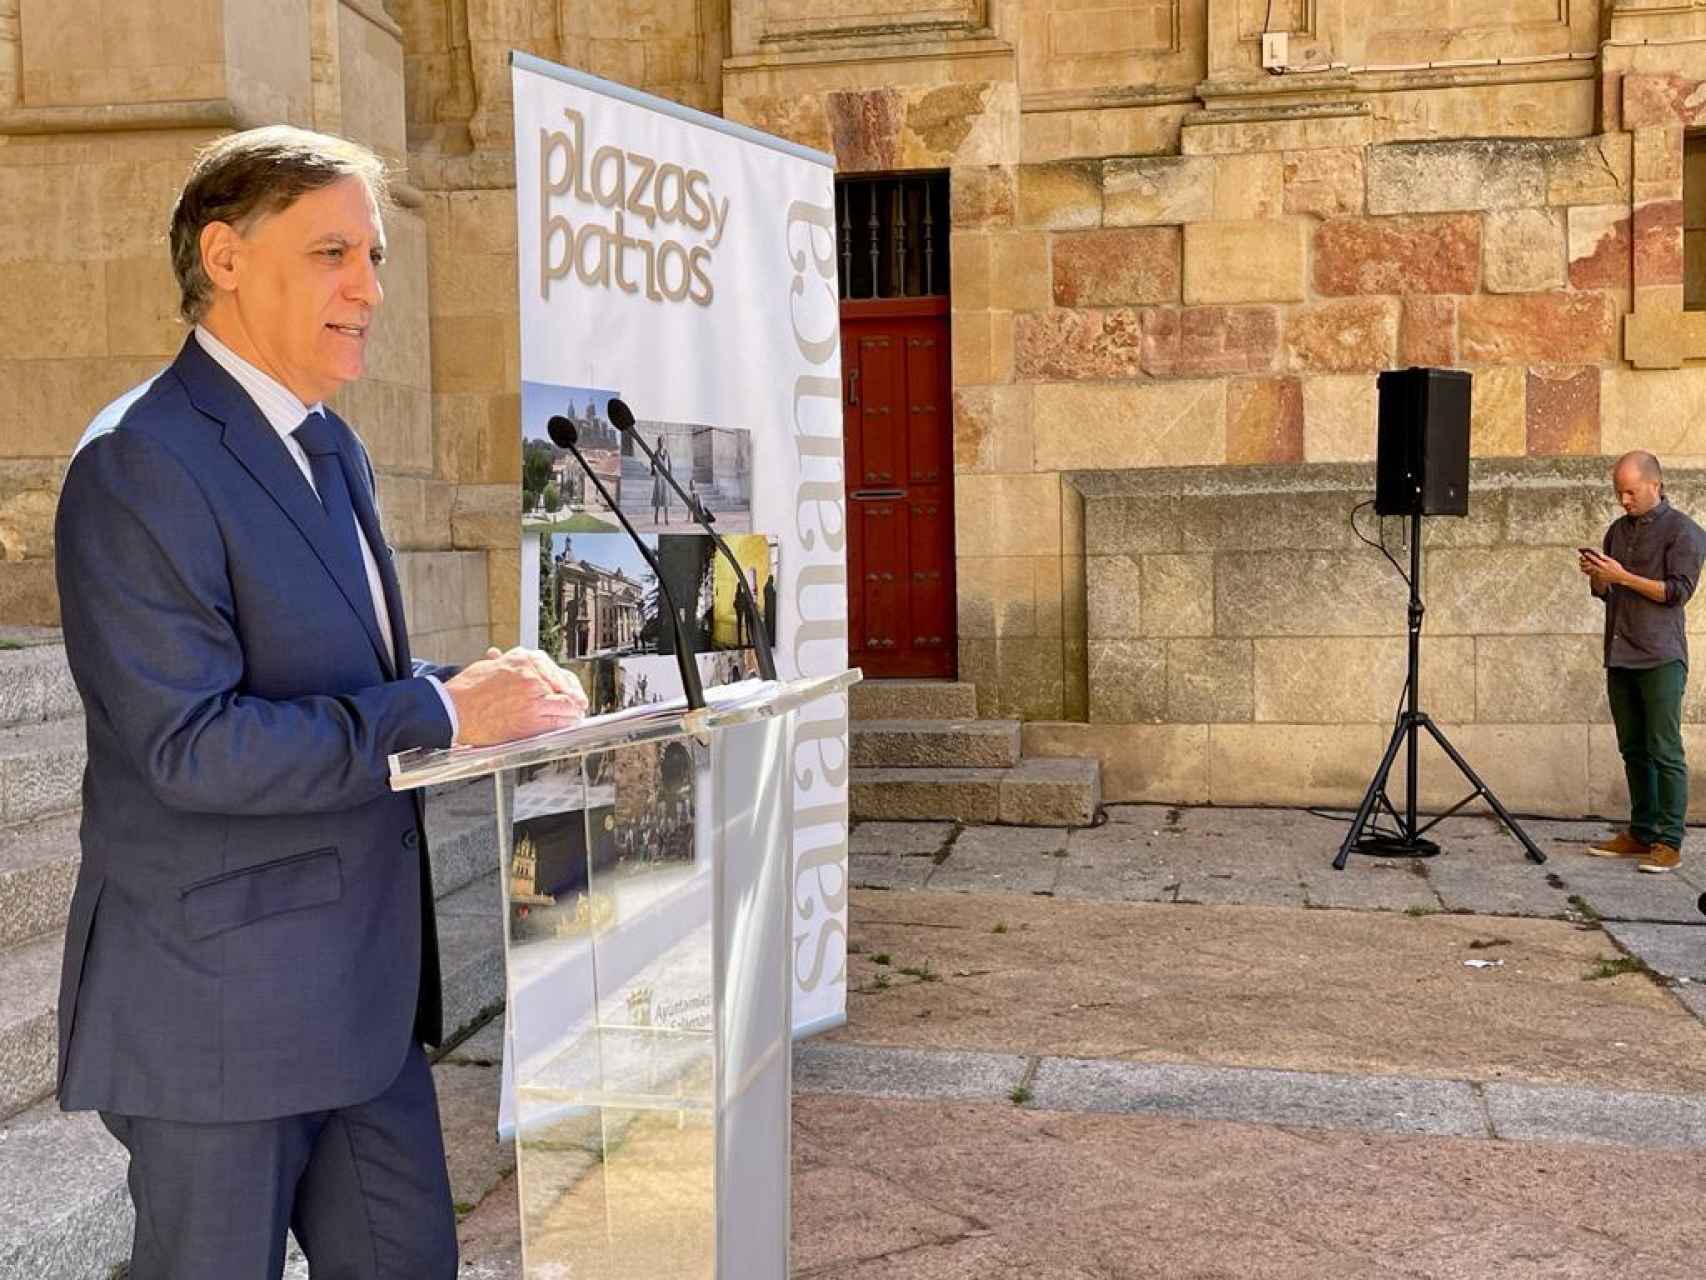 El alcalde de Salamanca, Carlos García Carbayo, presenta el programa de Plazas y Patios